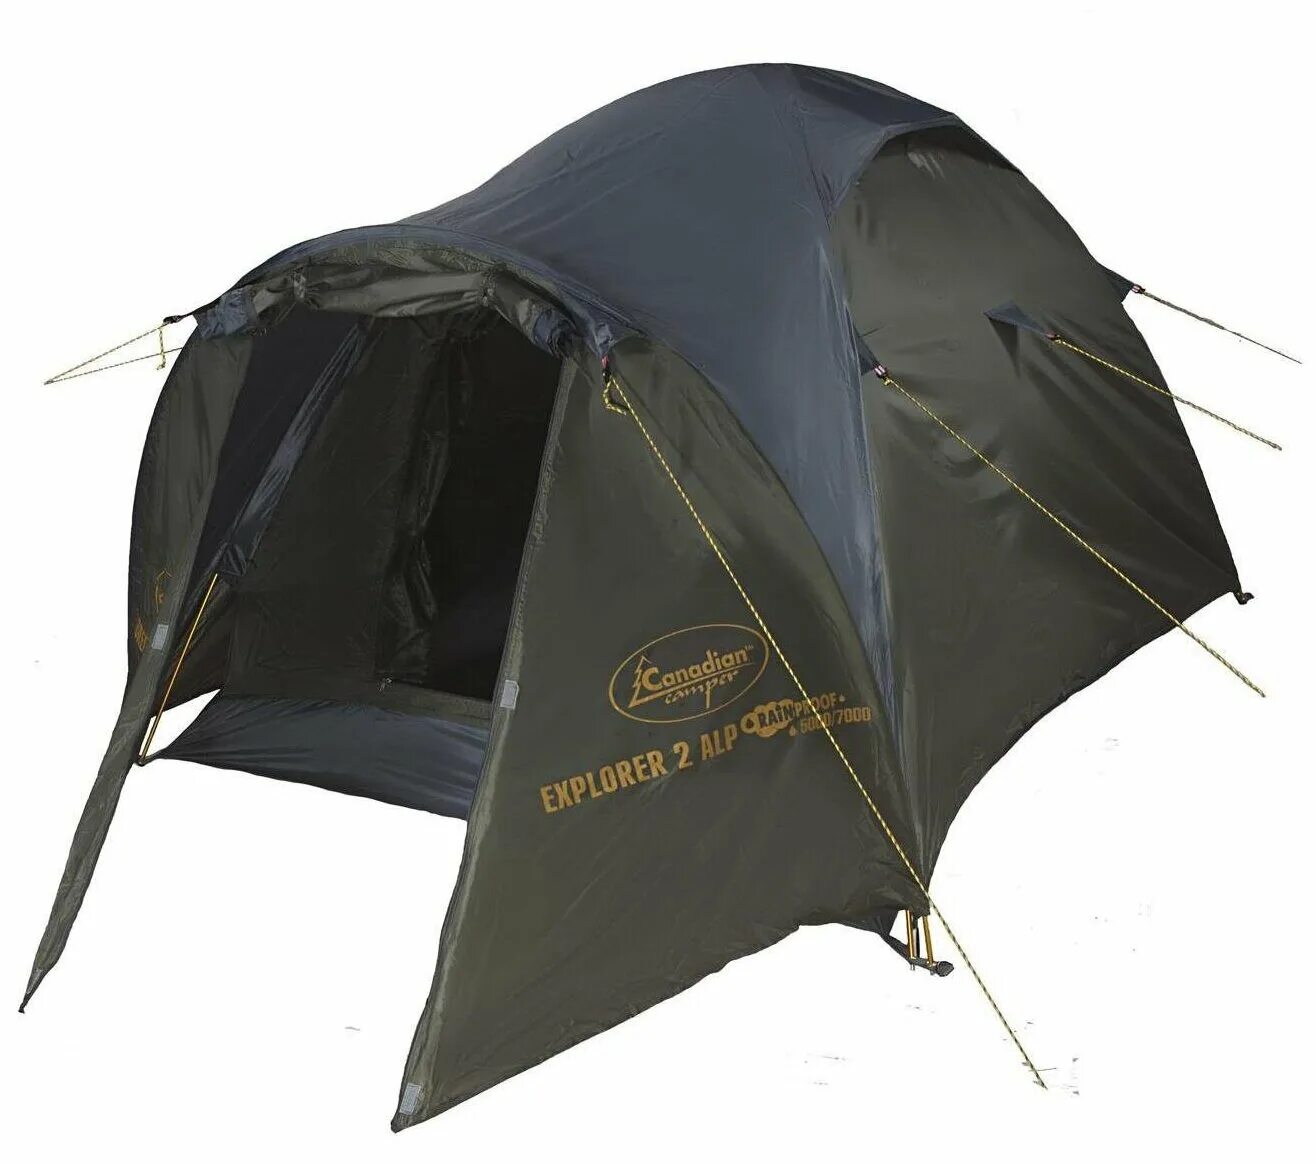 Canadian camper купить. Палатка Канадиан кемпер. Палатка Canadian Camper Orix 2. Canadian Camper Explorer 2 al. Палатка Canadian Camper Karibu 2.